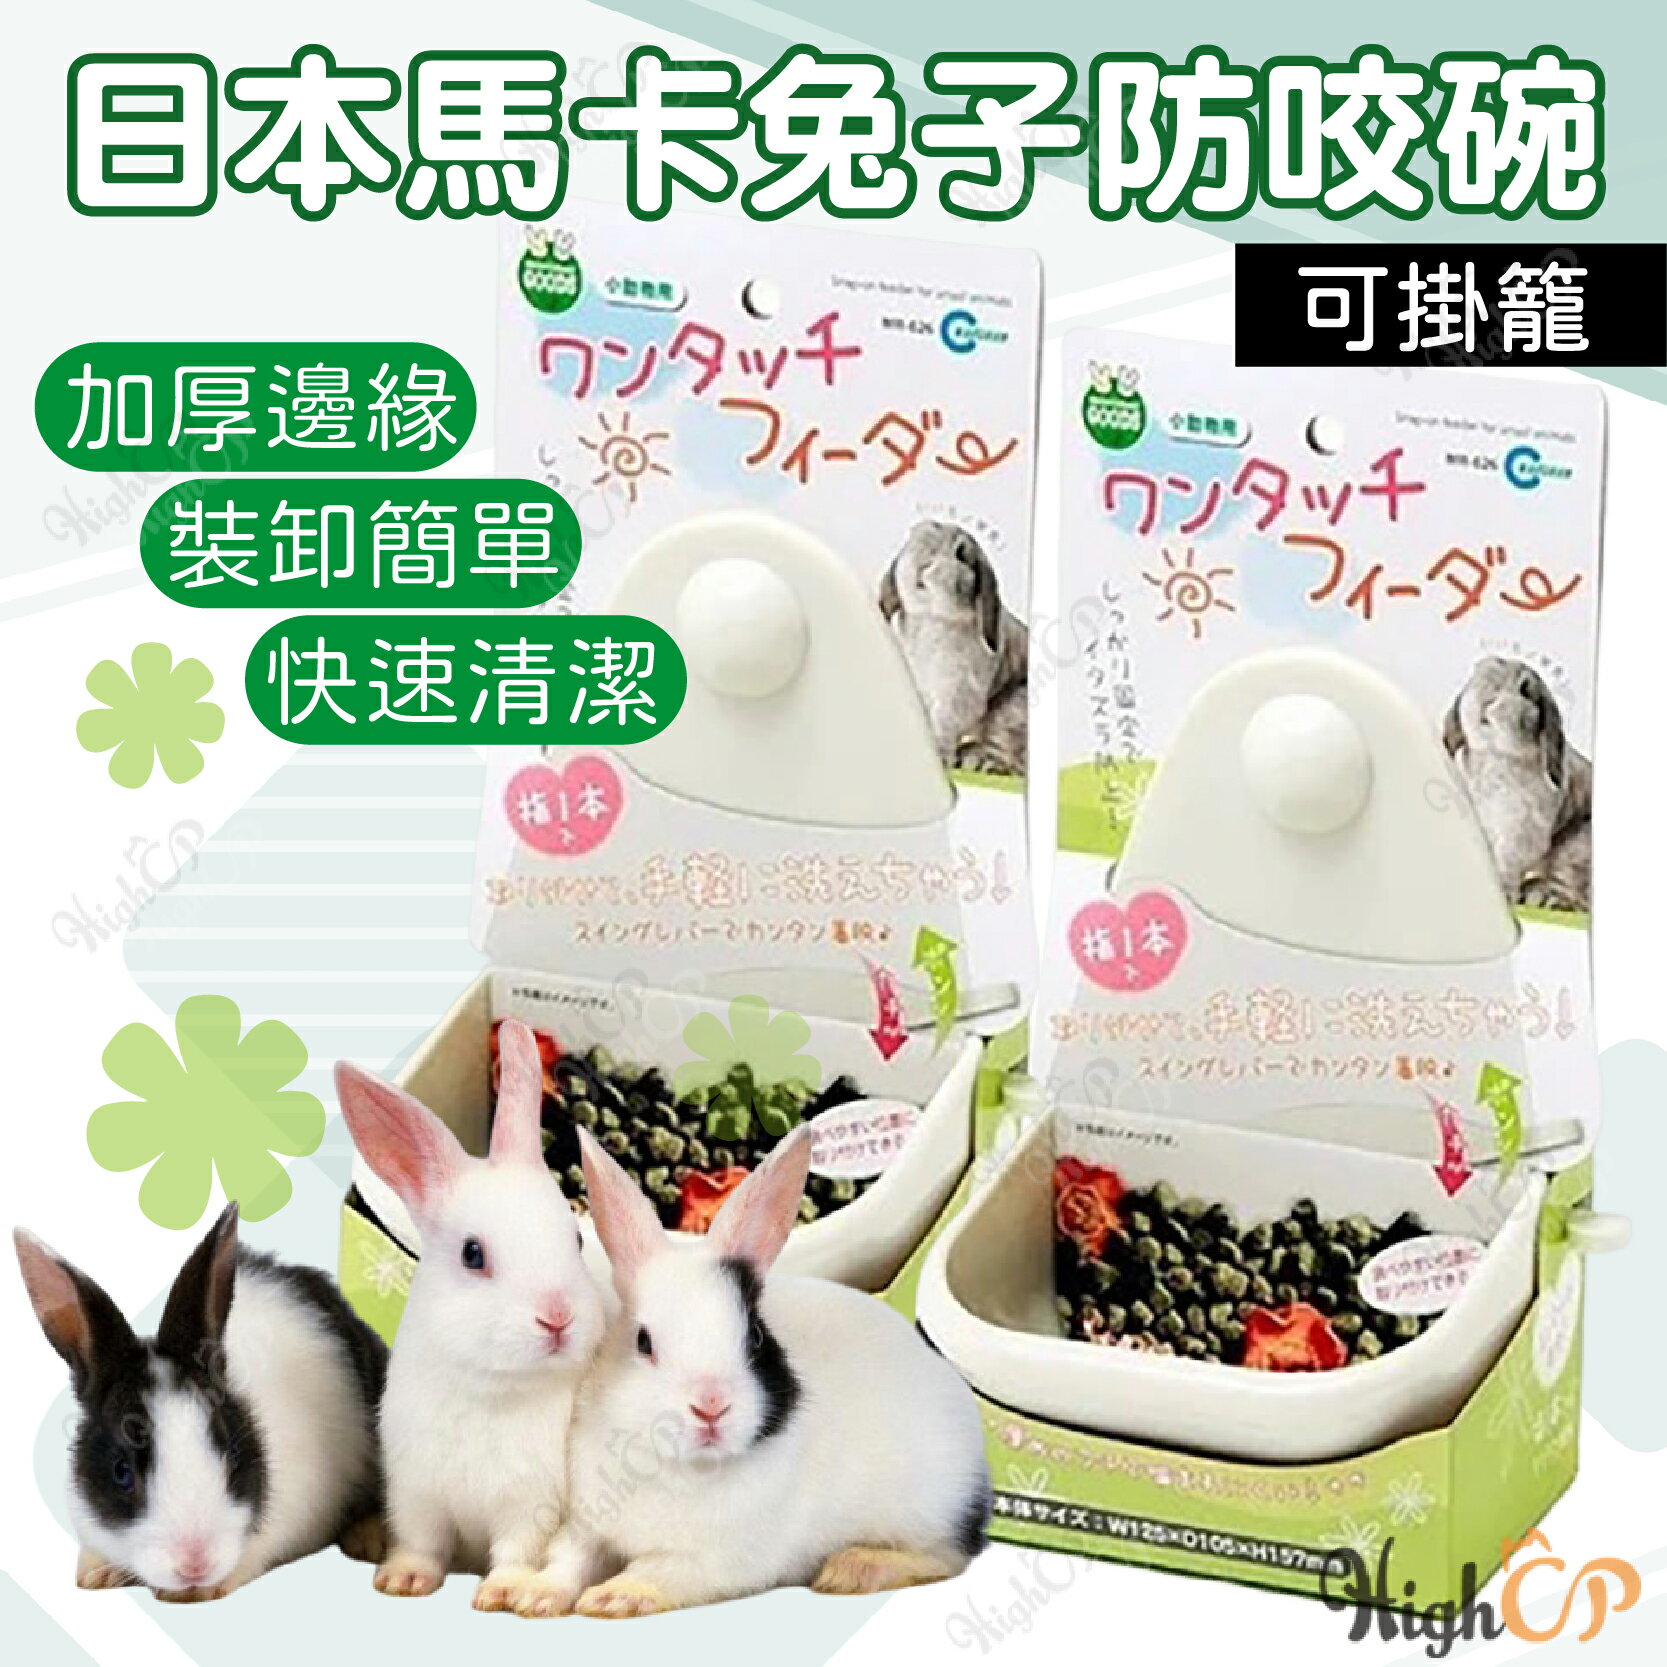 日本Marukan 可拆式兔子食盆 小寵飼料碗 兔子防咬碗 固定食碗 掛籠碗 兔子食盆 飼料碗【230812】